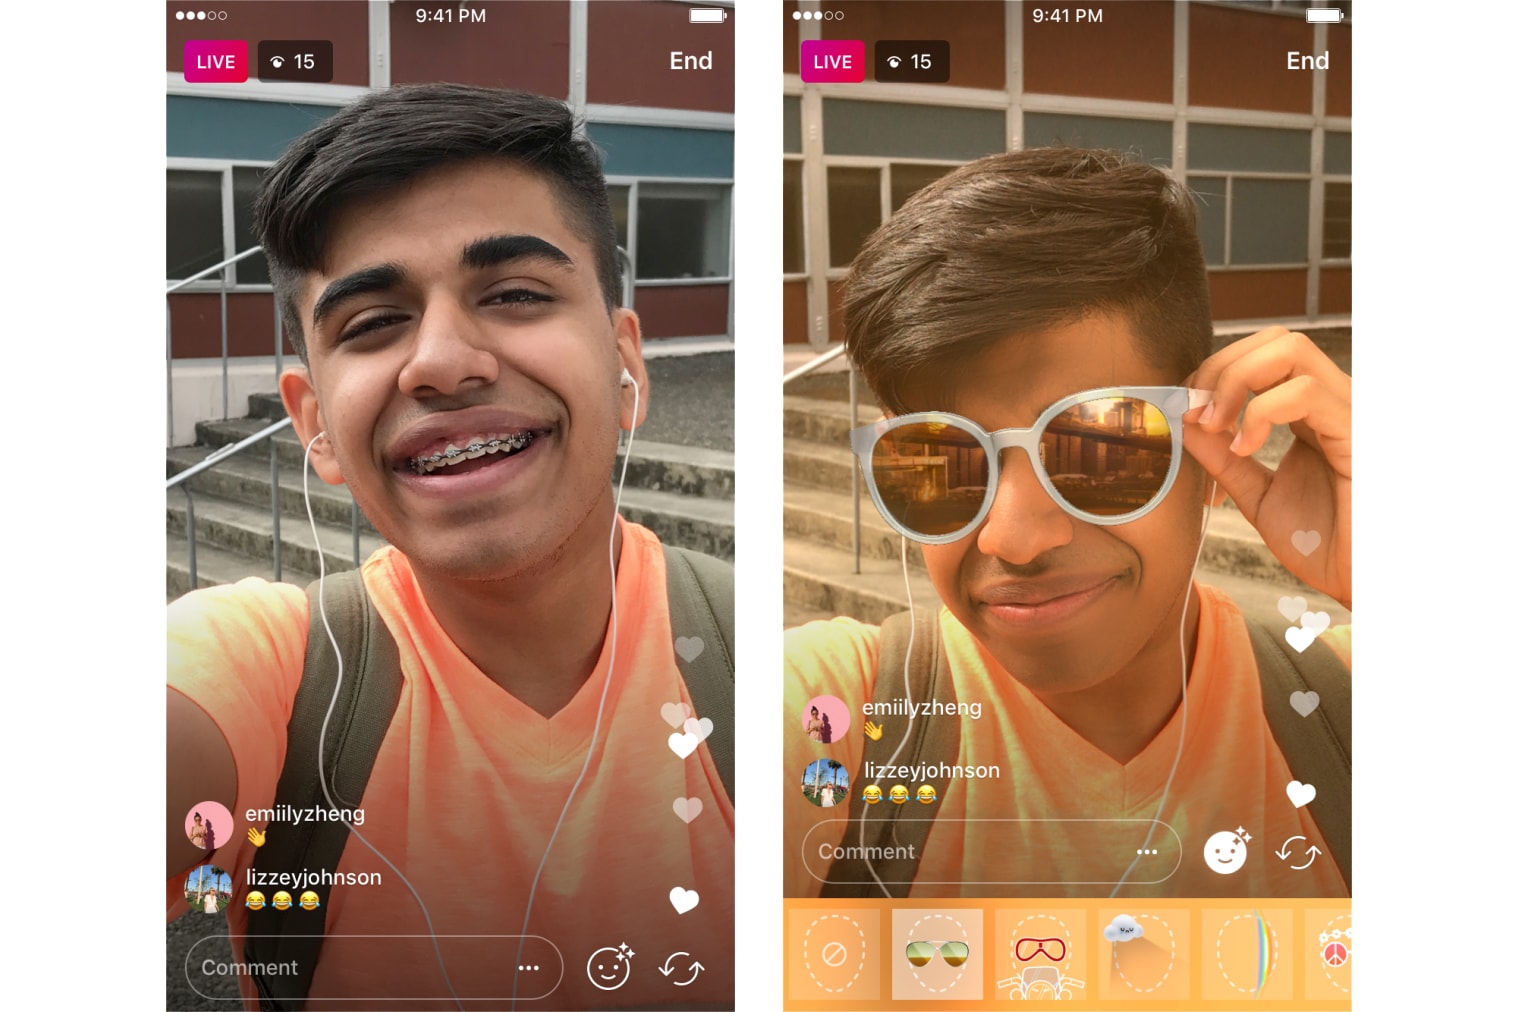 Instagram Face Filters Live Videos 2017 September 21 Release App Update